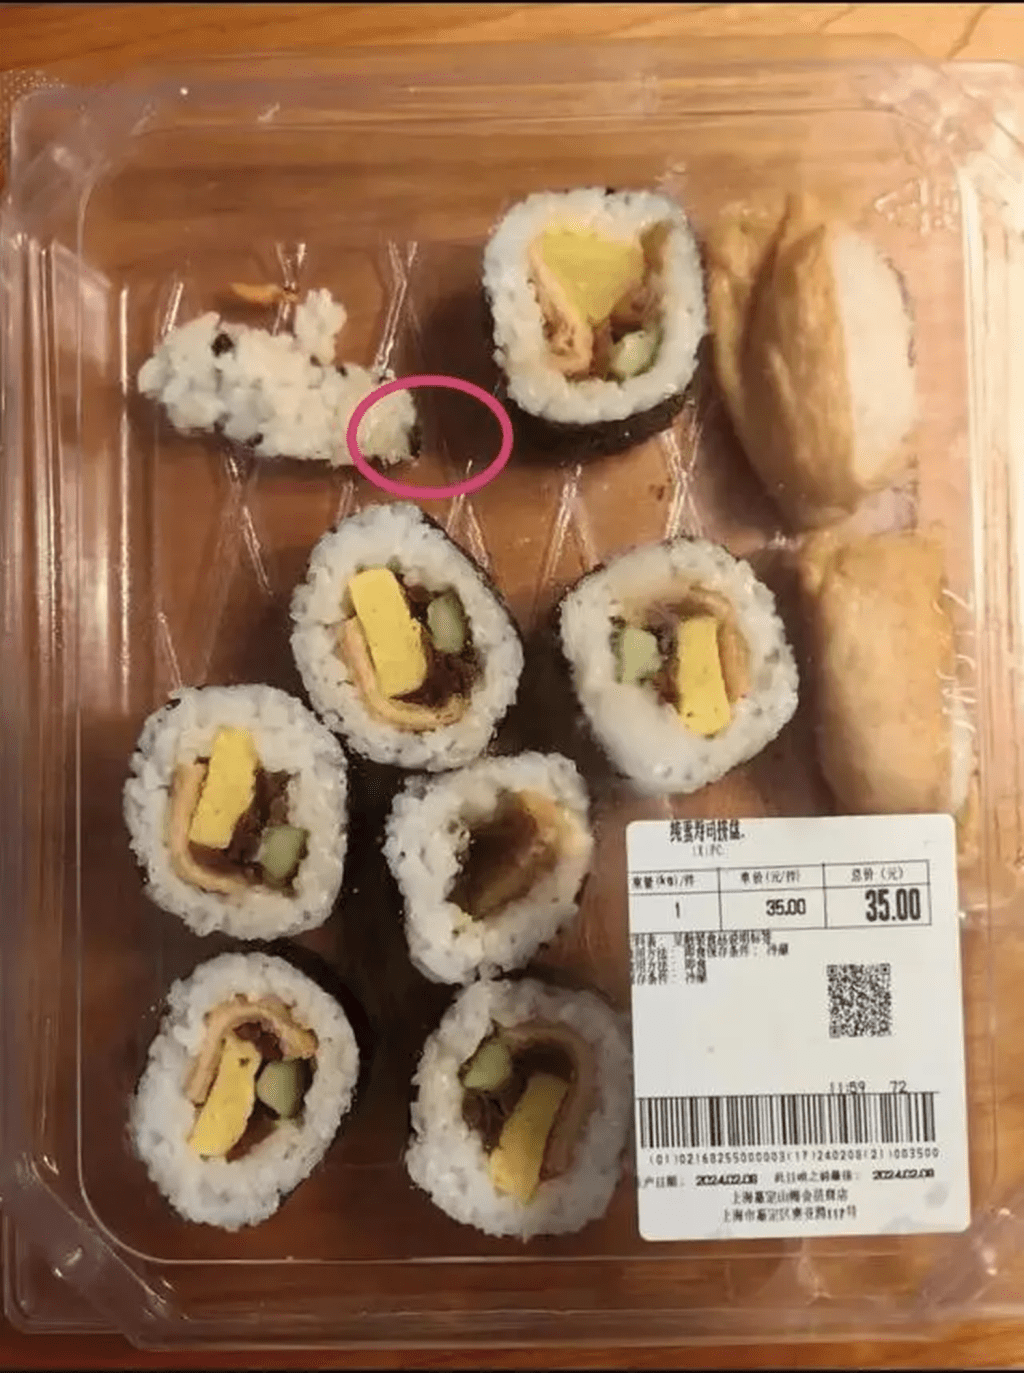 對方解釋稱，餐吧裡的壽司拼盤均為供應商配送，食品出現異物，與他們無關。